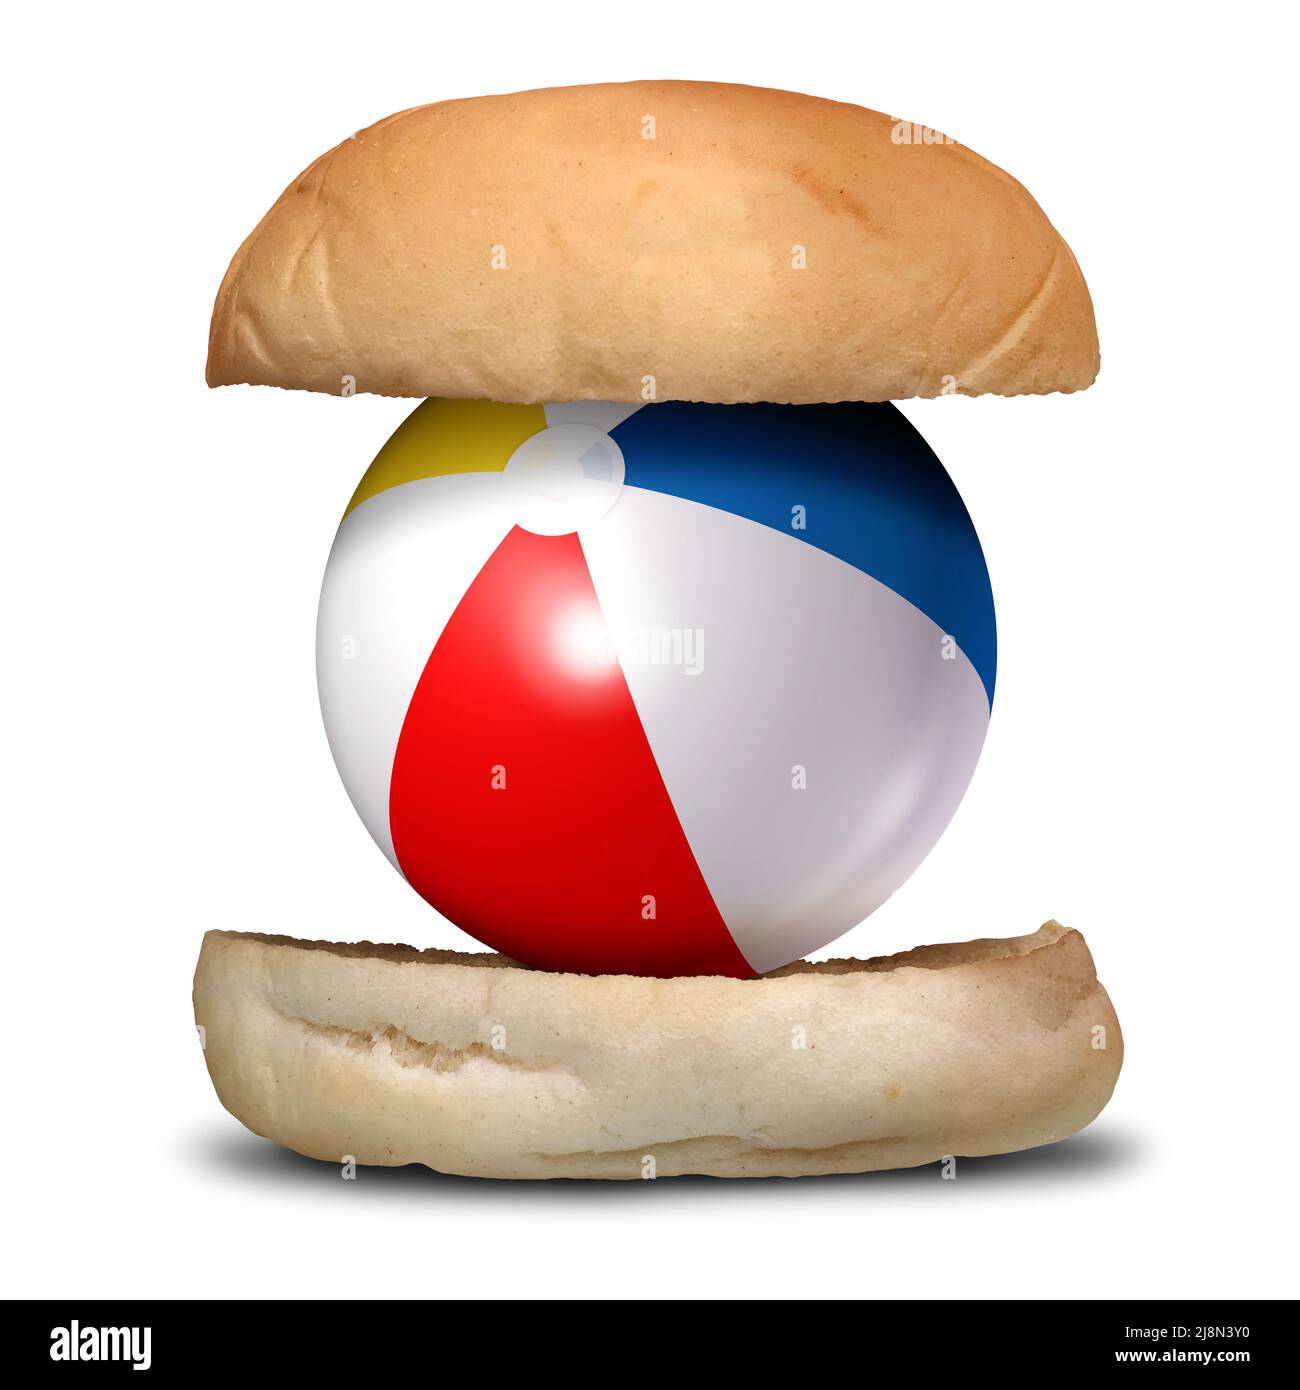 Diversión y comida como barbacoa de verano o cocina de verano y fiesta de barbacoa como una hamburguesa con una pelota de playa. Foto de stock